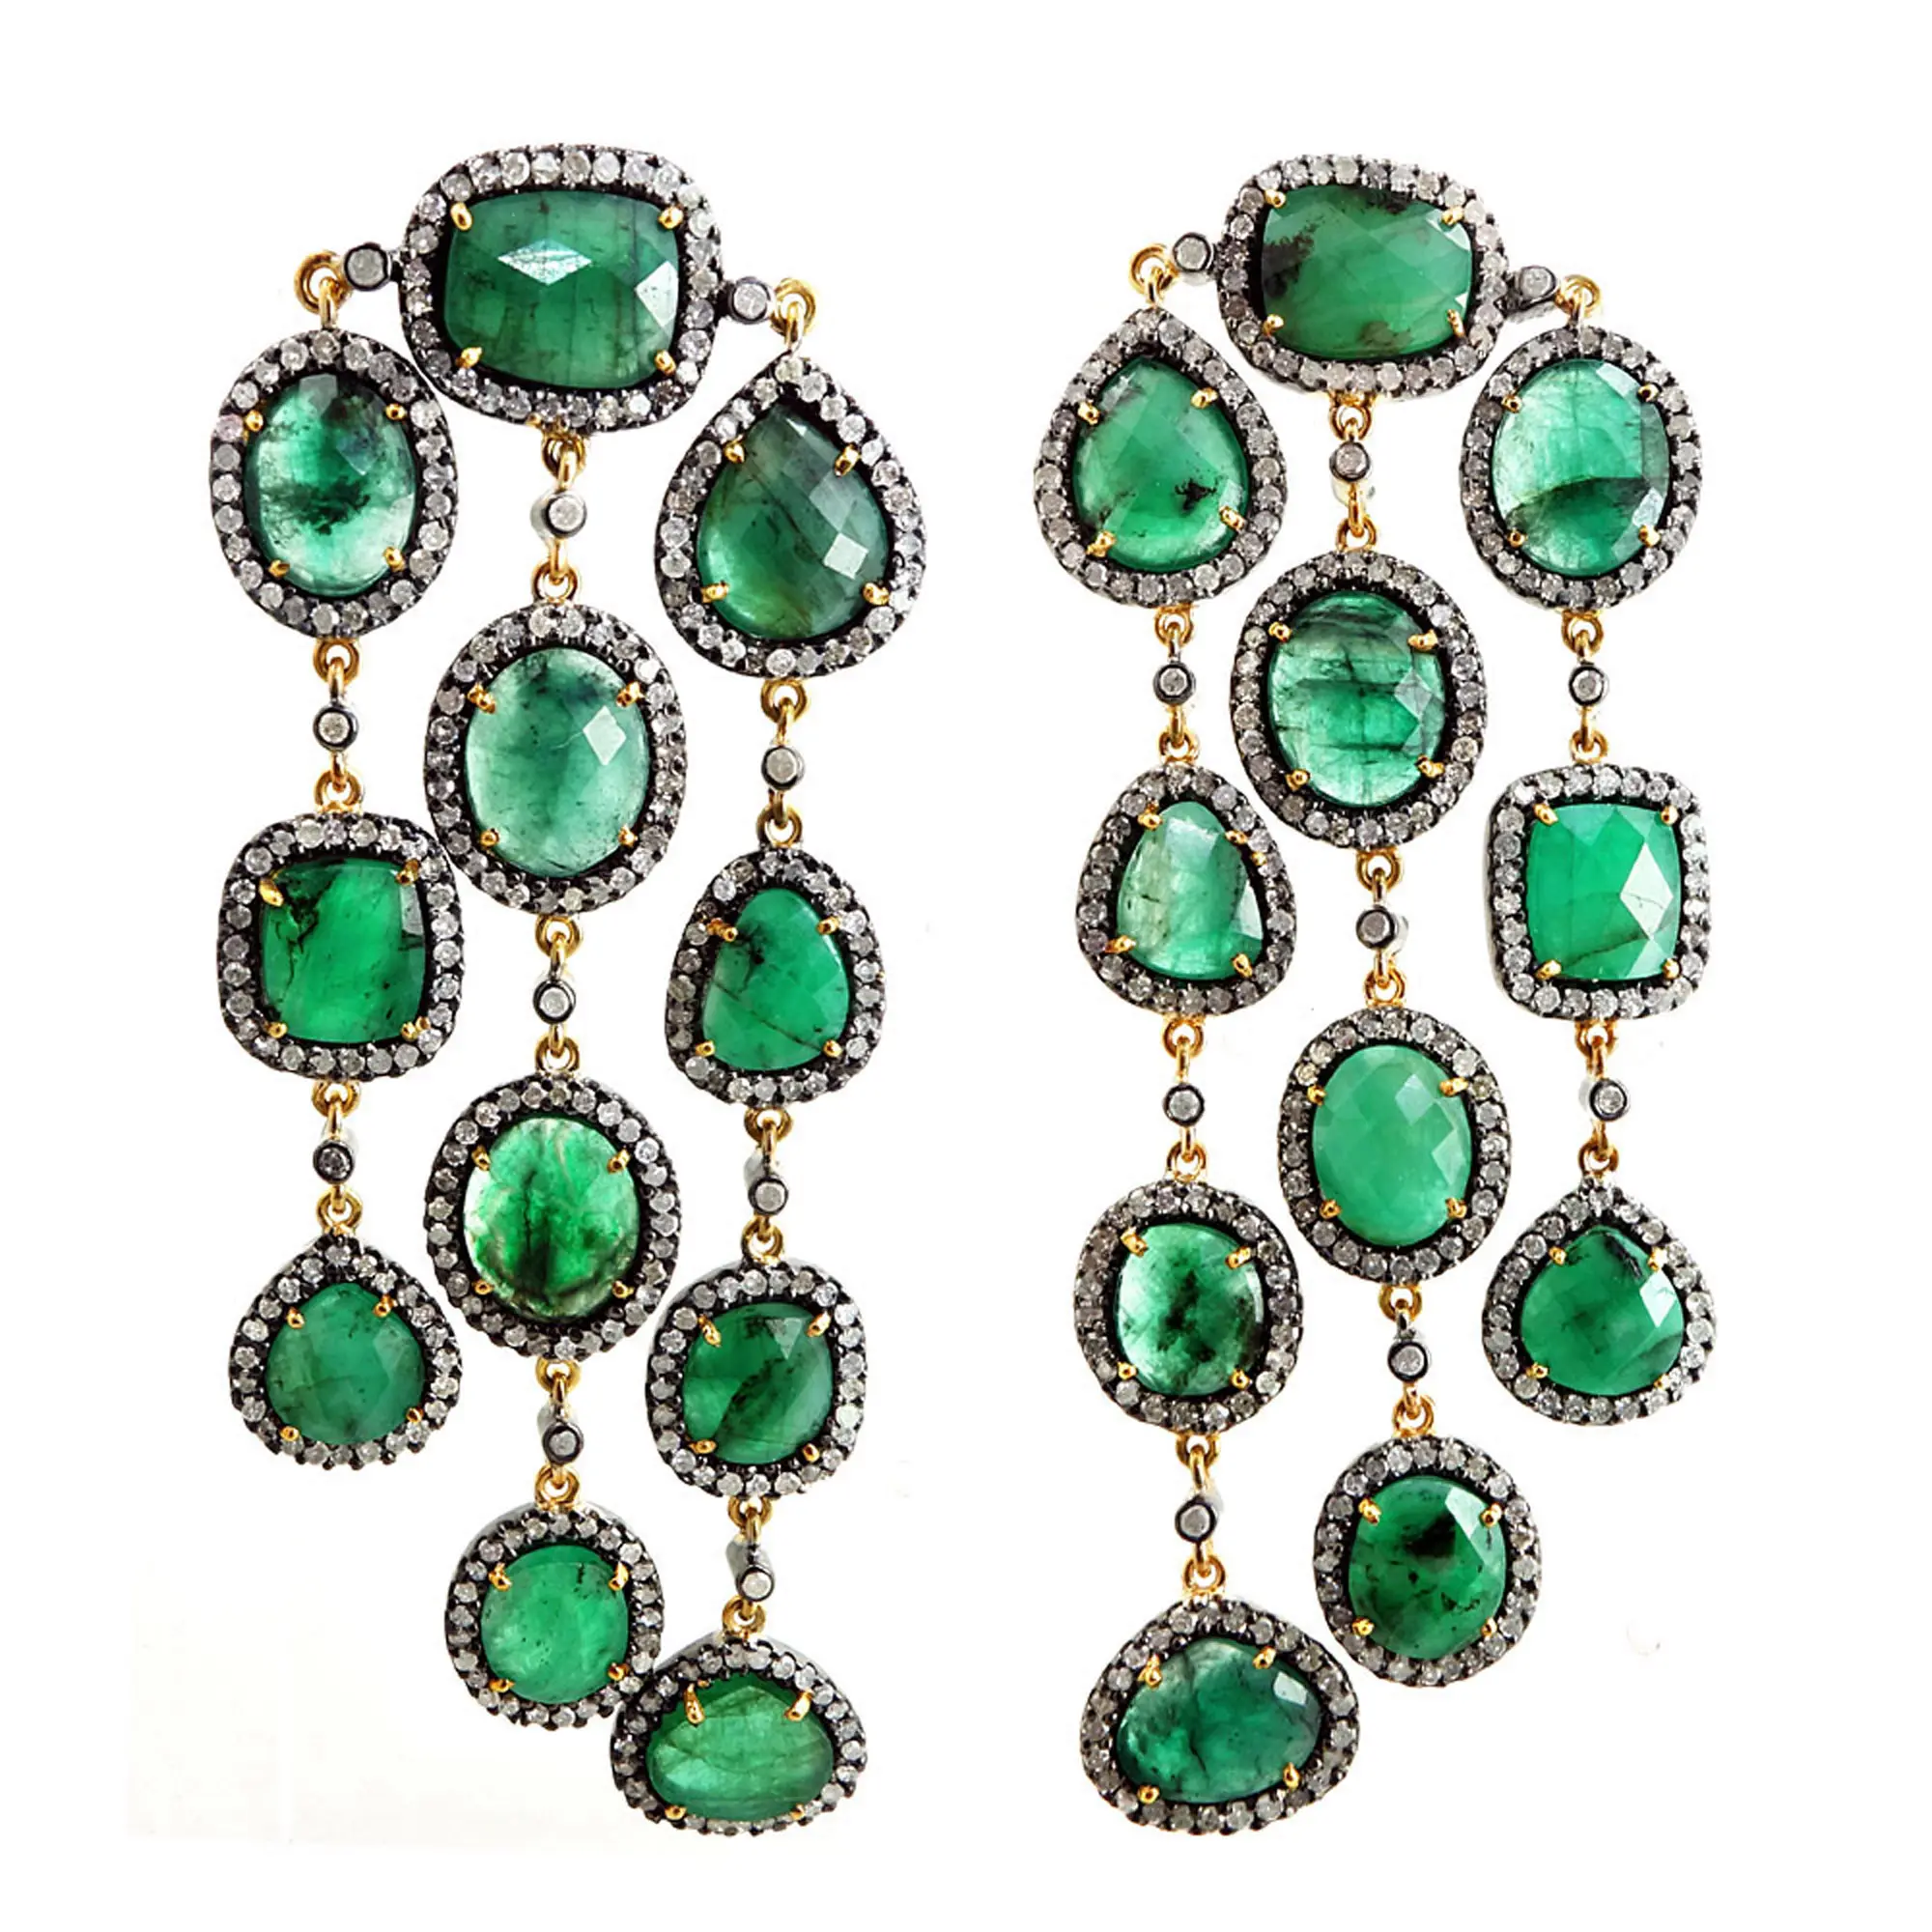 Real 14k Gold Pave Diamond Emerald Chandelier Earrings 925 Sterling Silver Gemstone Chandelier Earrings Fine Jewelry Wholesaler